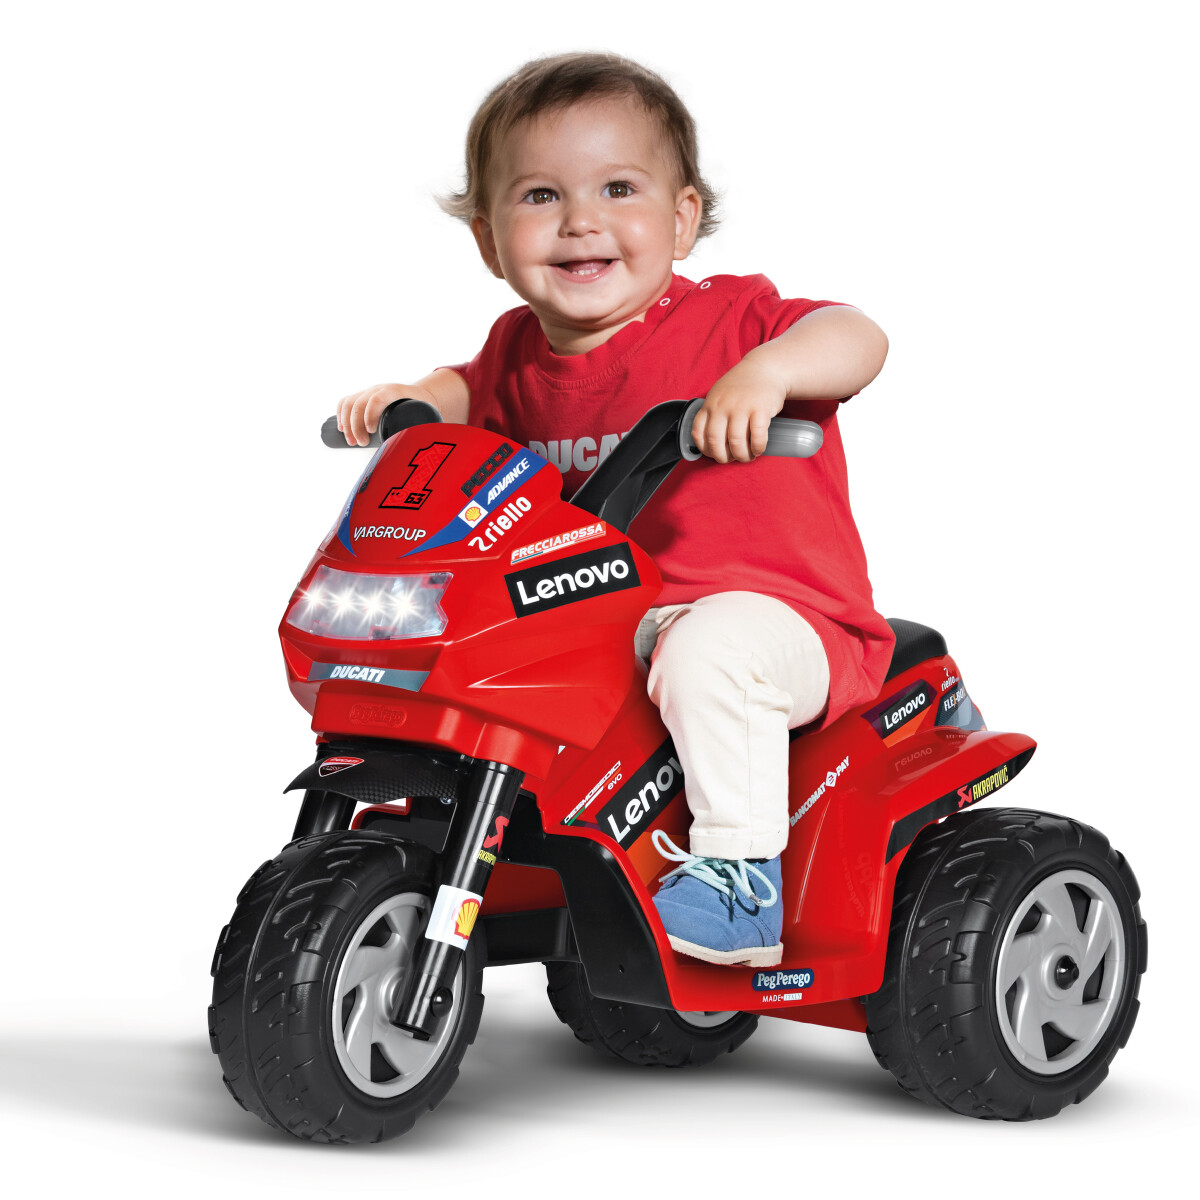 Ducati mini evo, maxi divertimento! la moto elettrica per bambini con luci e suoni. - Peg Perego